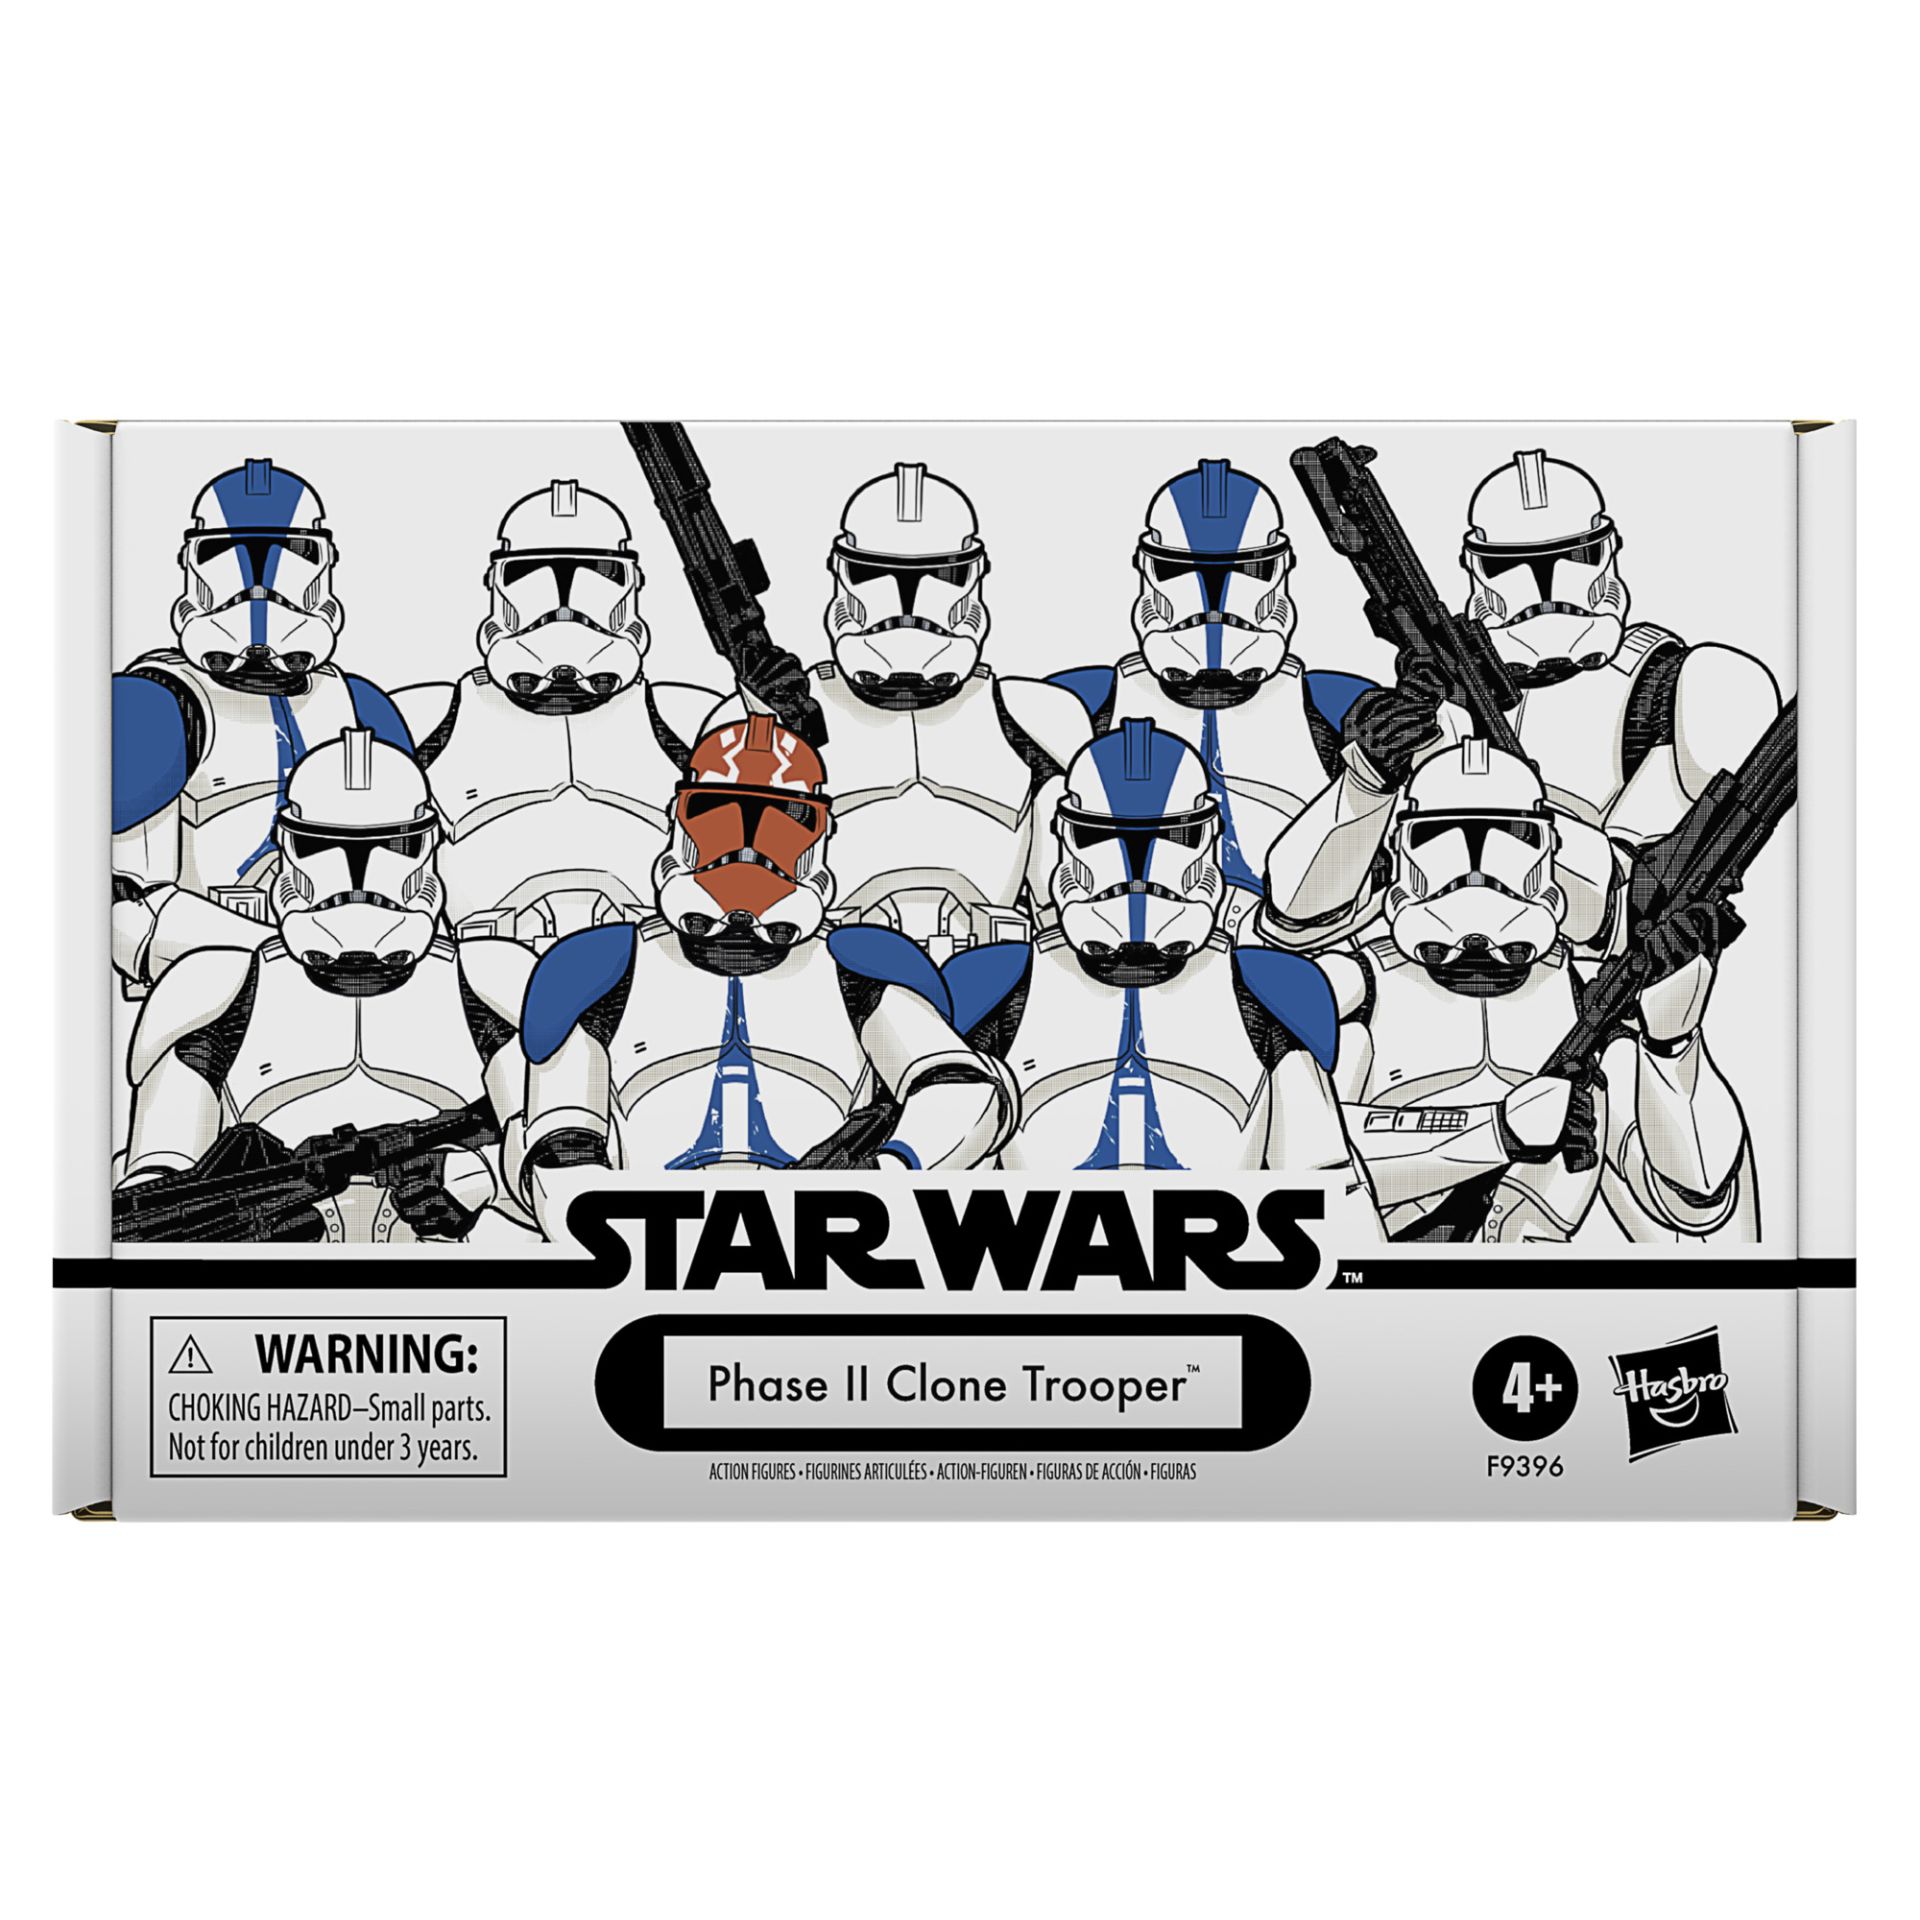 Star Wars 4-Pack Pin Set